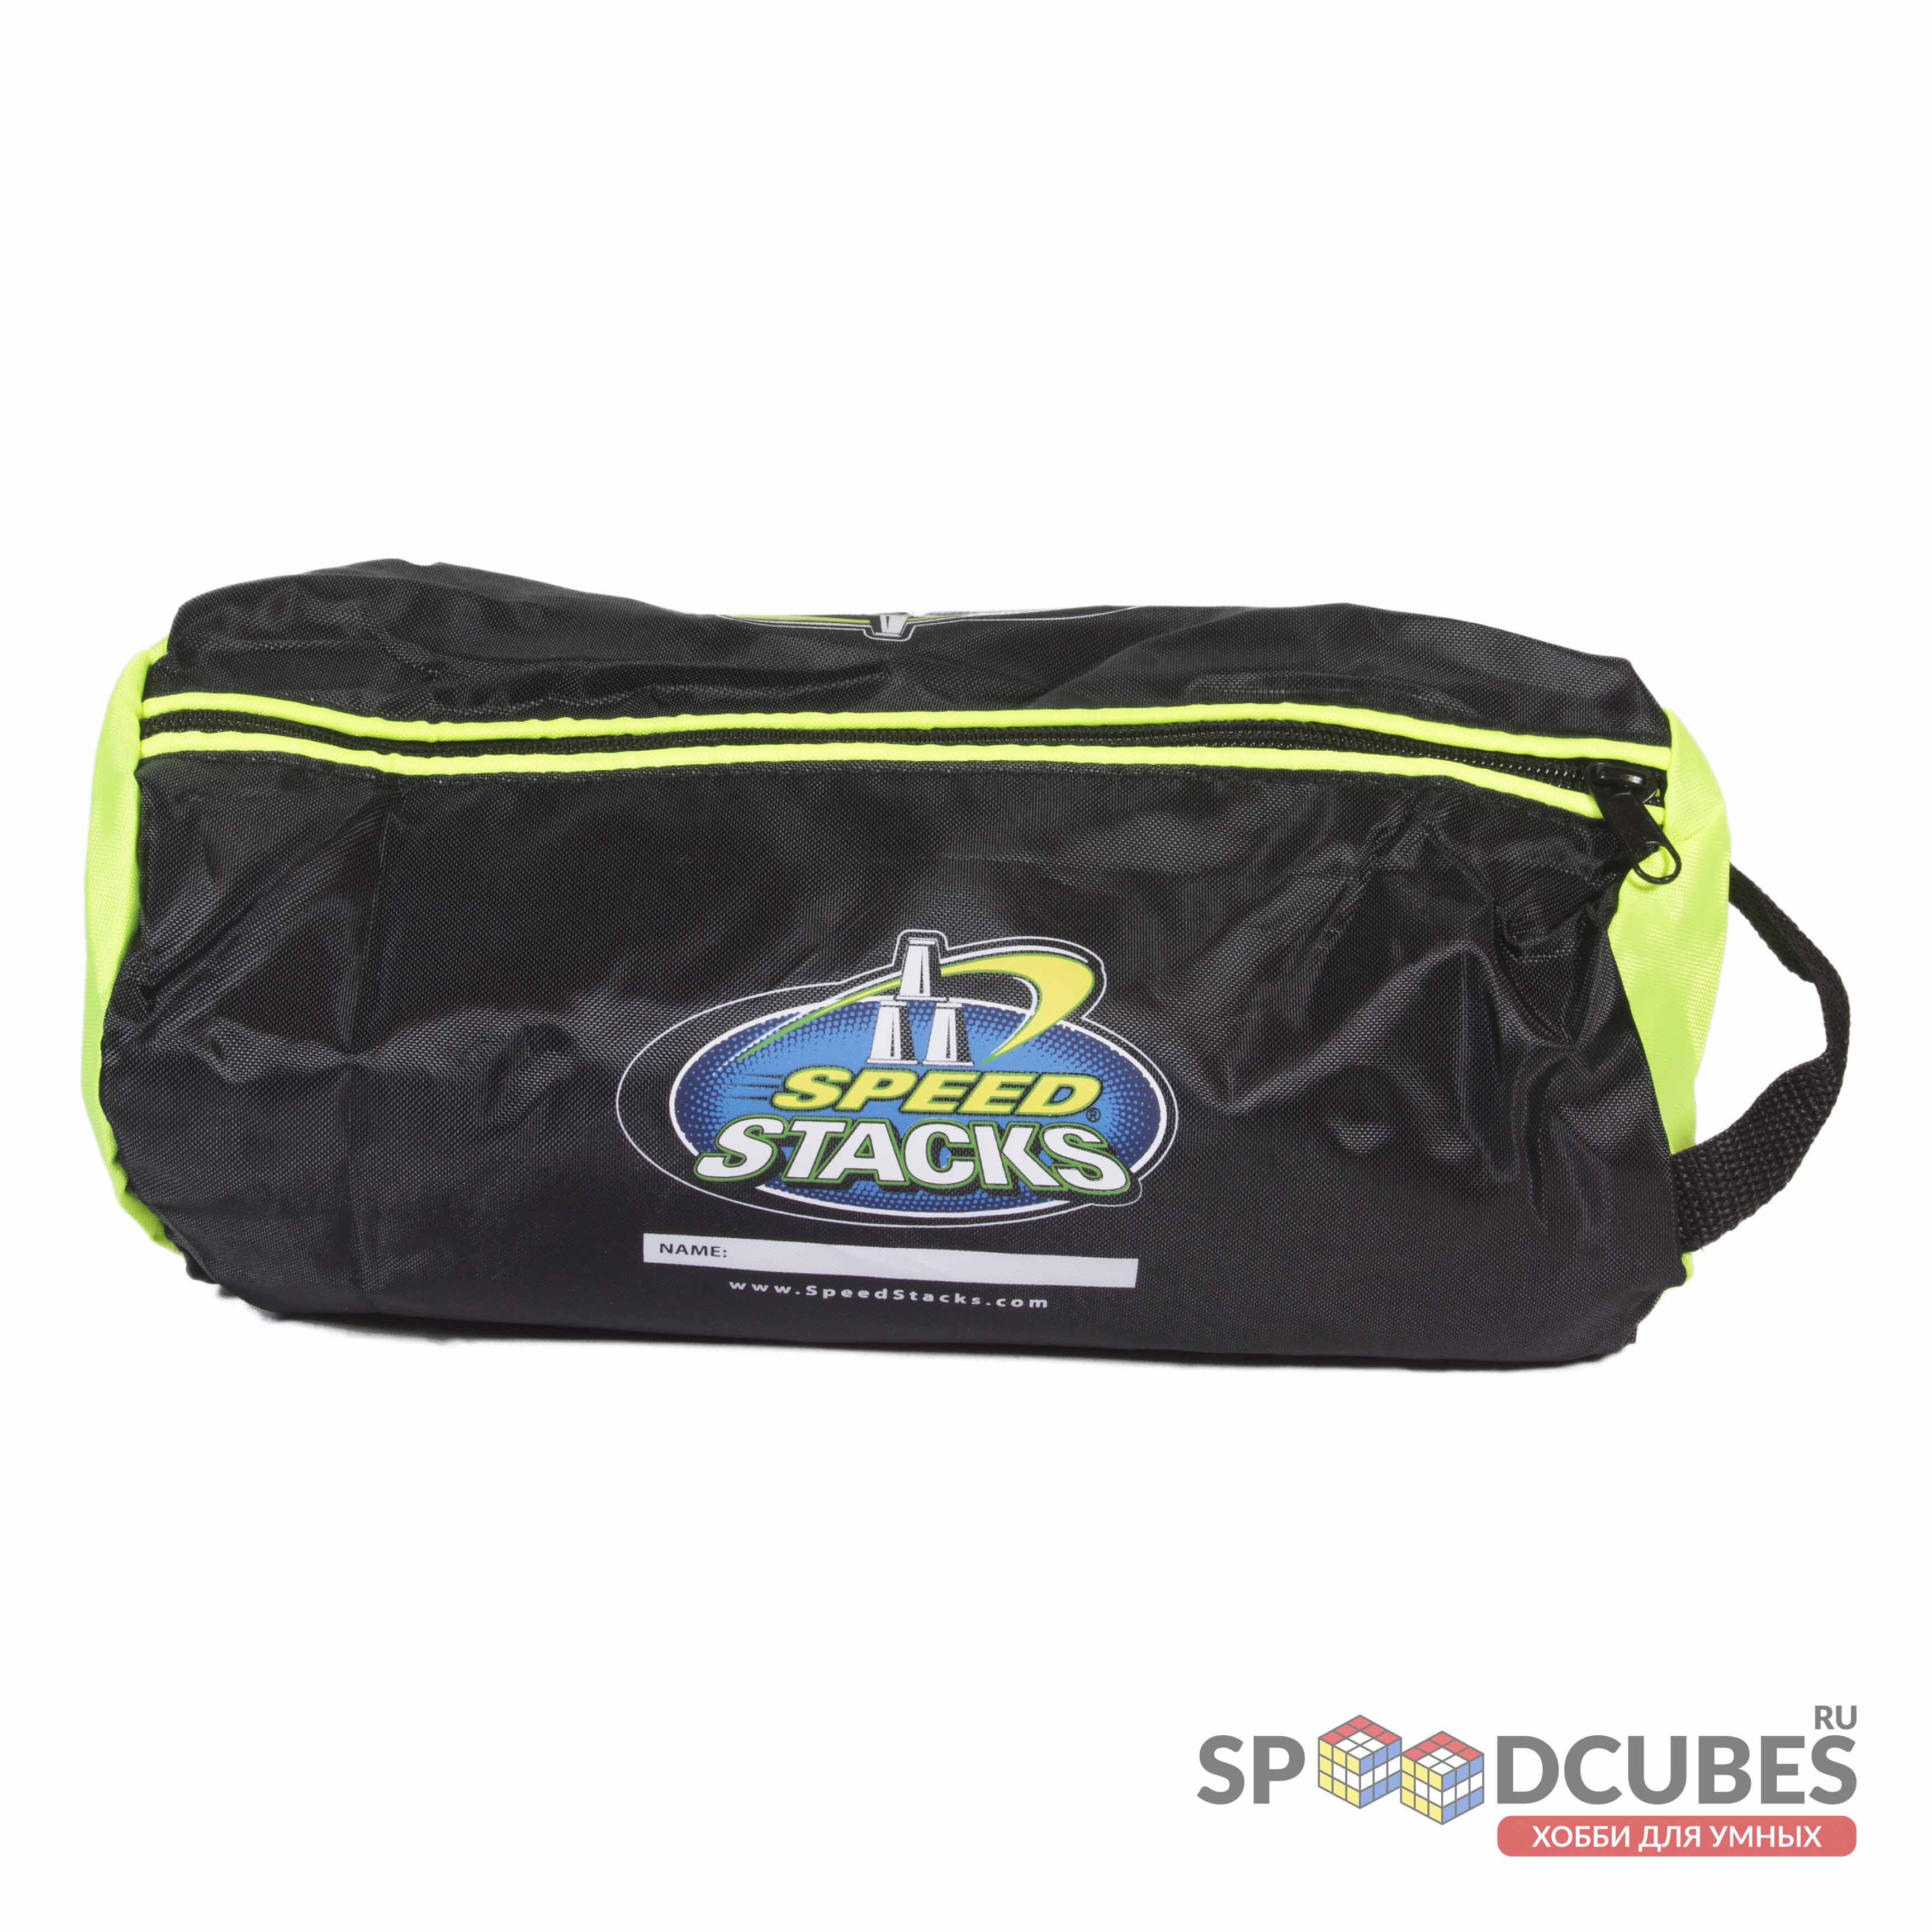 SpeedStacks Cube Handbag сумка для кубов и таймера